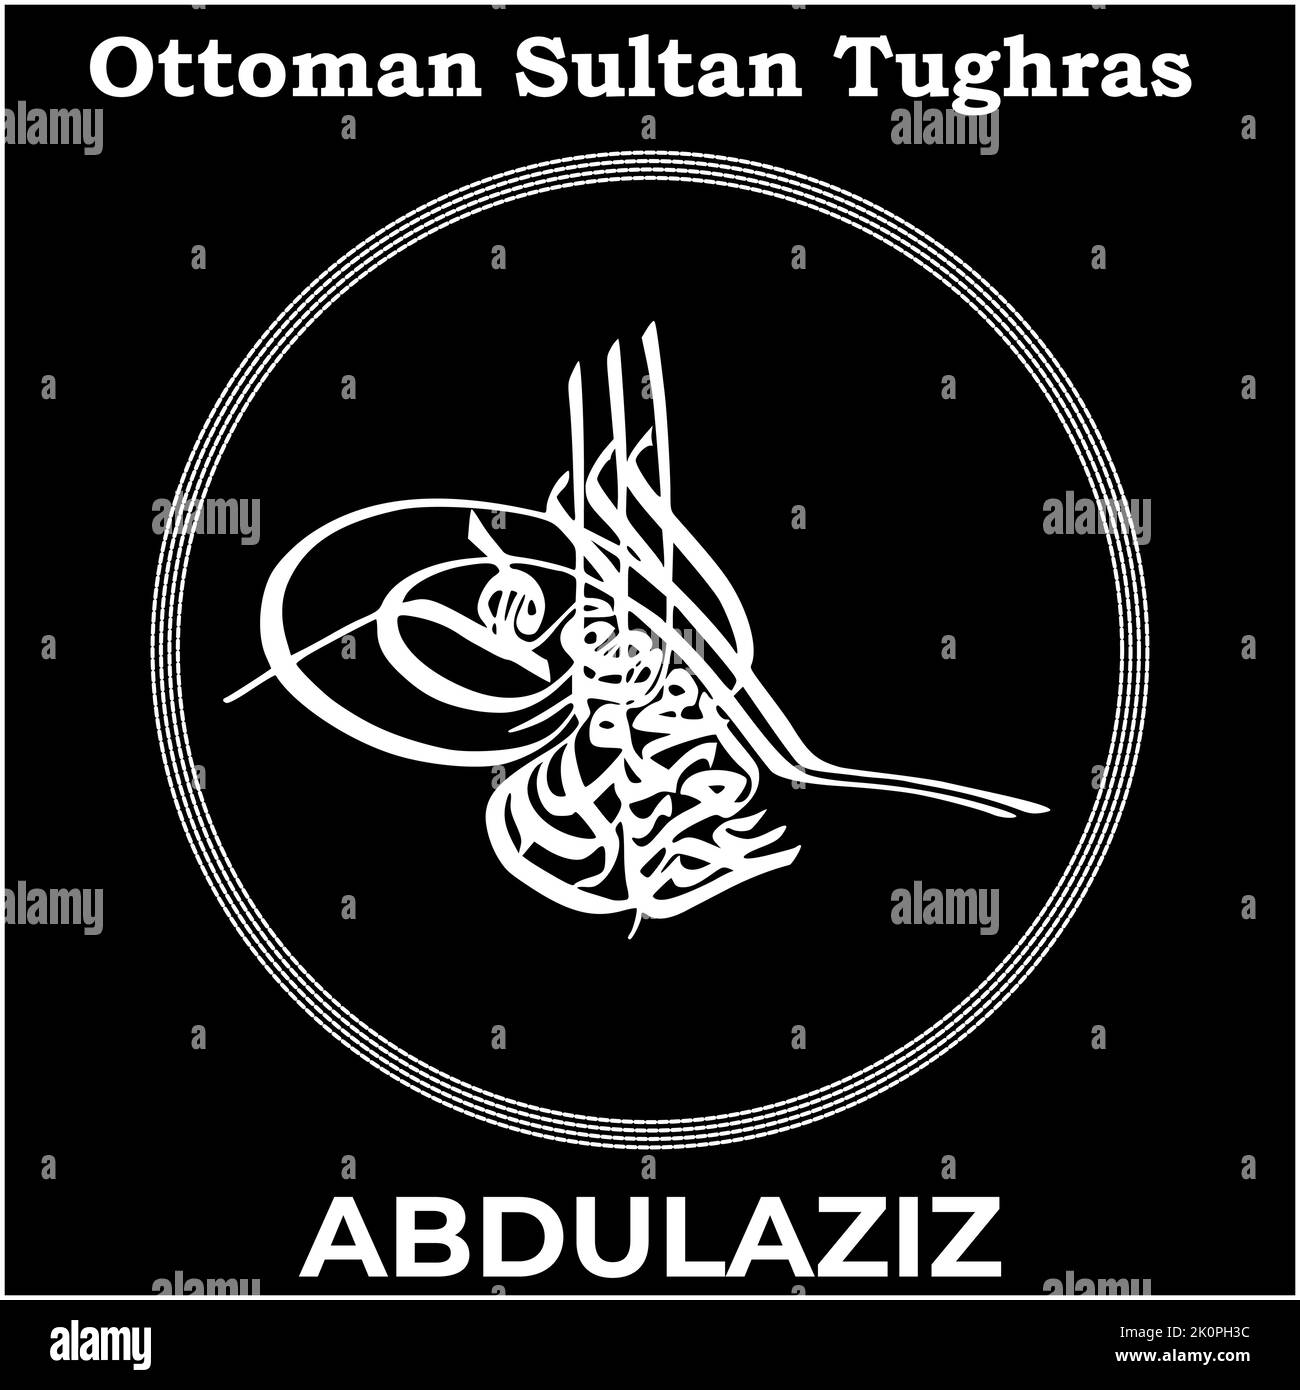 Immagine vettoriale con firma Tughra del trentaduesimo sultano ottomano Abdulaziz, Tughra di Abdulaziz con sfondo nero. Illustrazione Vettoriale